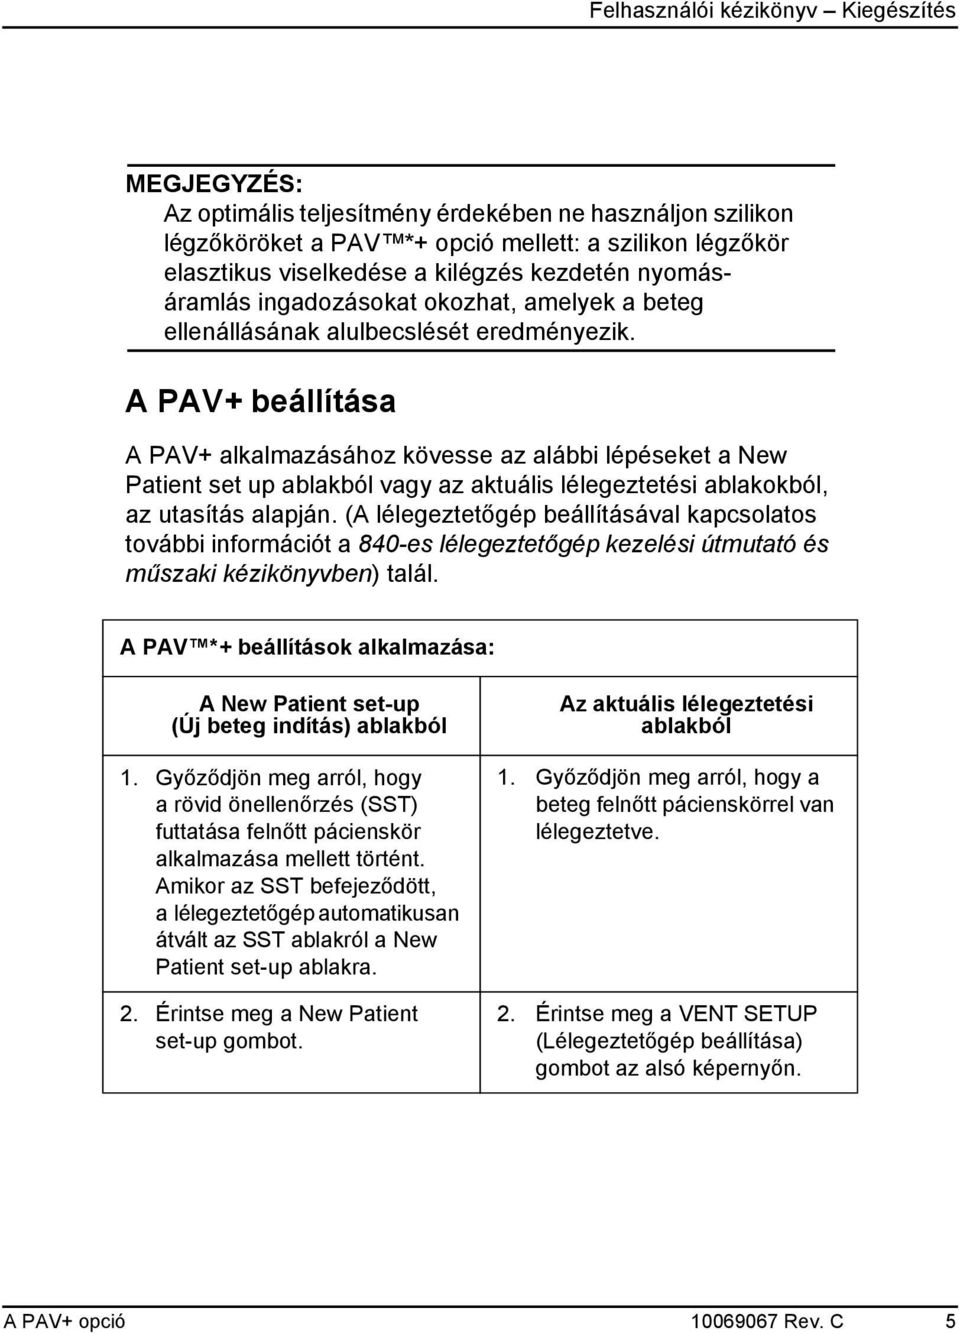 A PAV+ beállítása A PAV+ alkalmazásához kövesse az alábbi lépéseket a New Patient set up ablakból vagy az aktuális lélegeztetési ablakokból, az utasítás alapján.